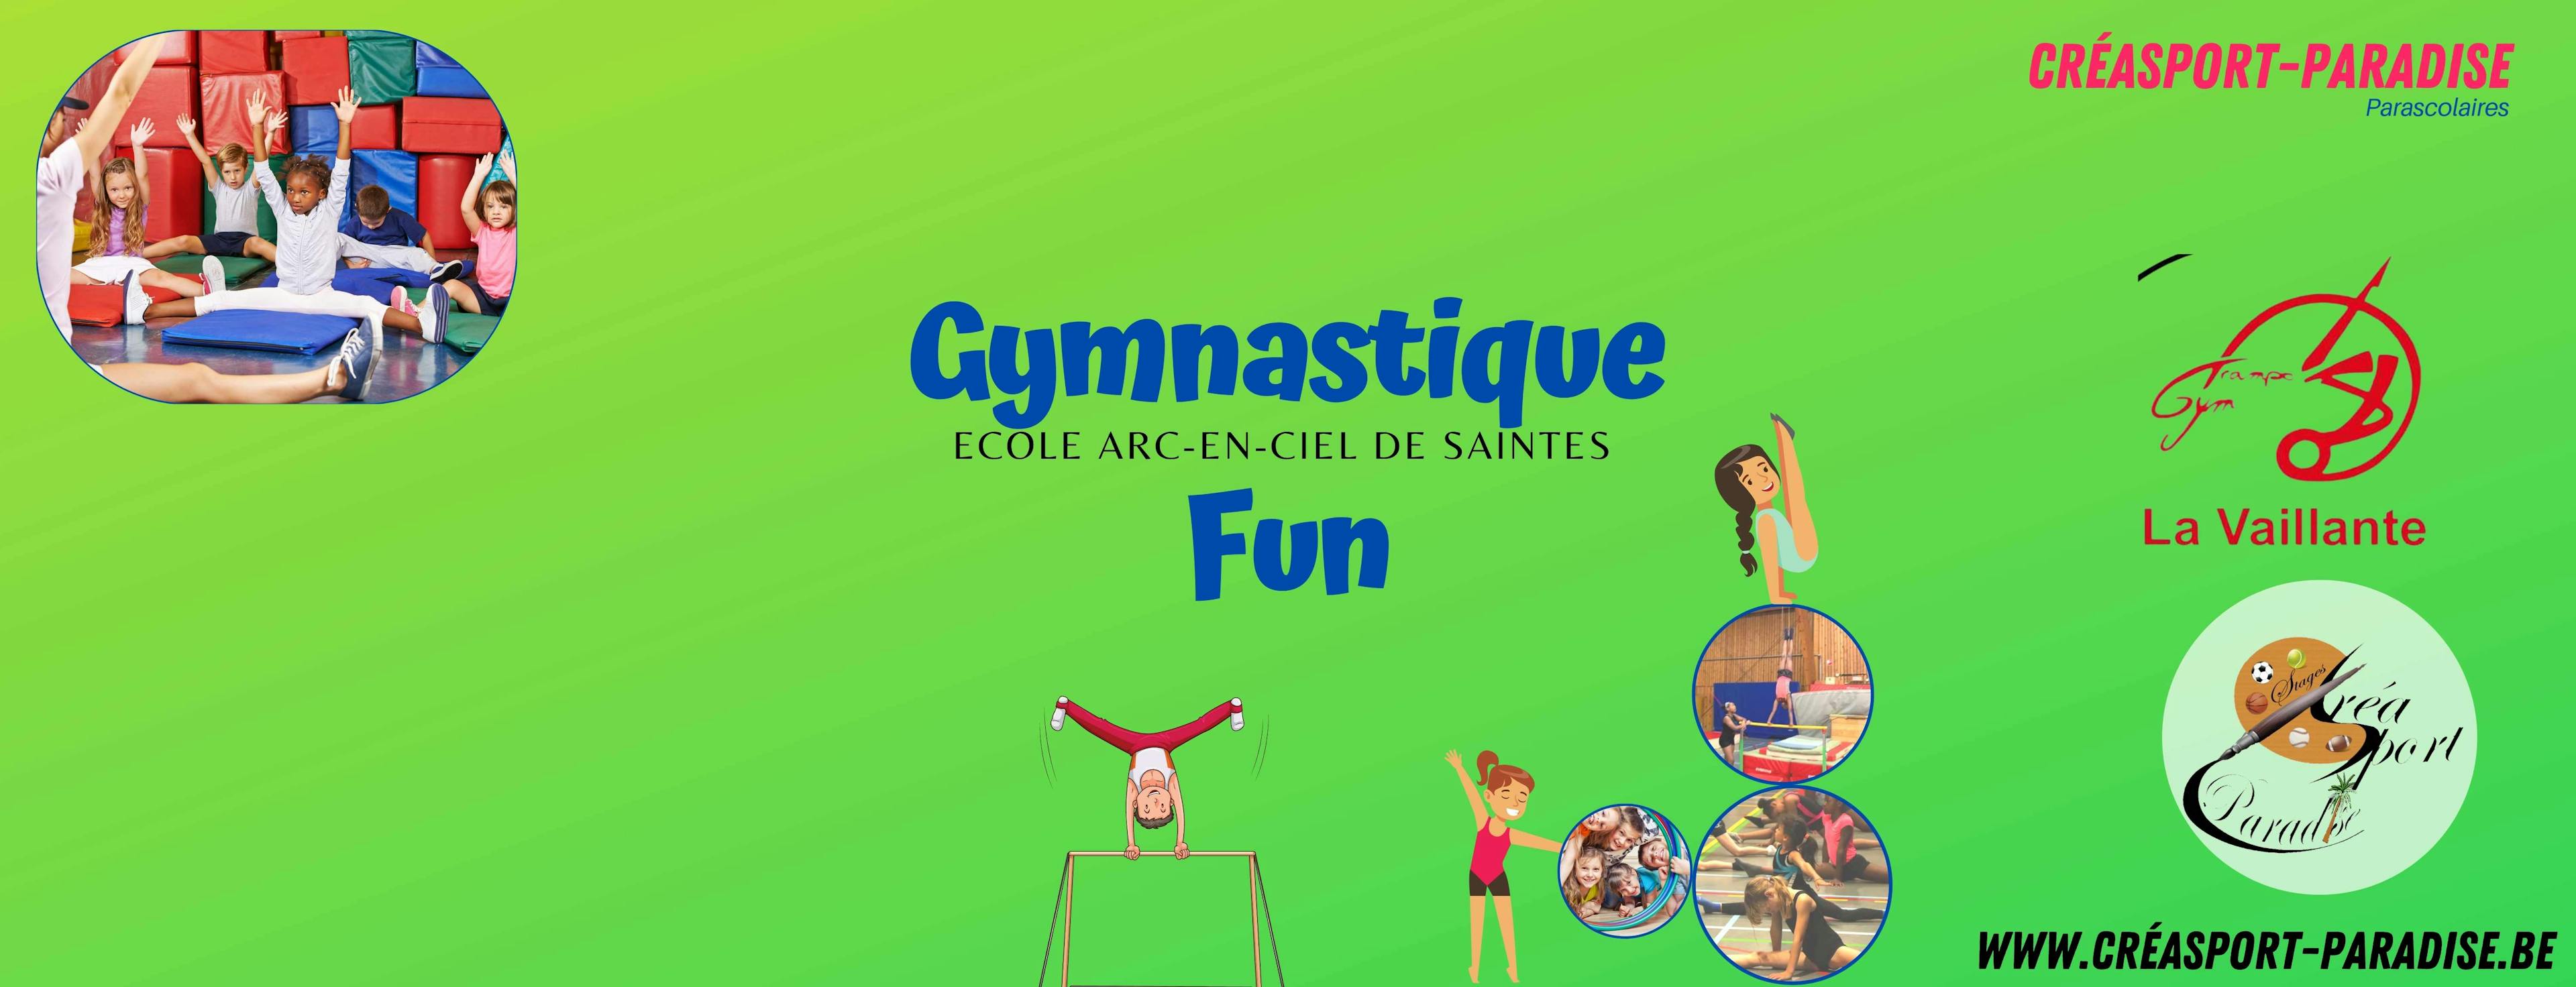 Parascolaire Ecole de Saintes - 16h20 MARDI - Gymnastique / FUN